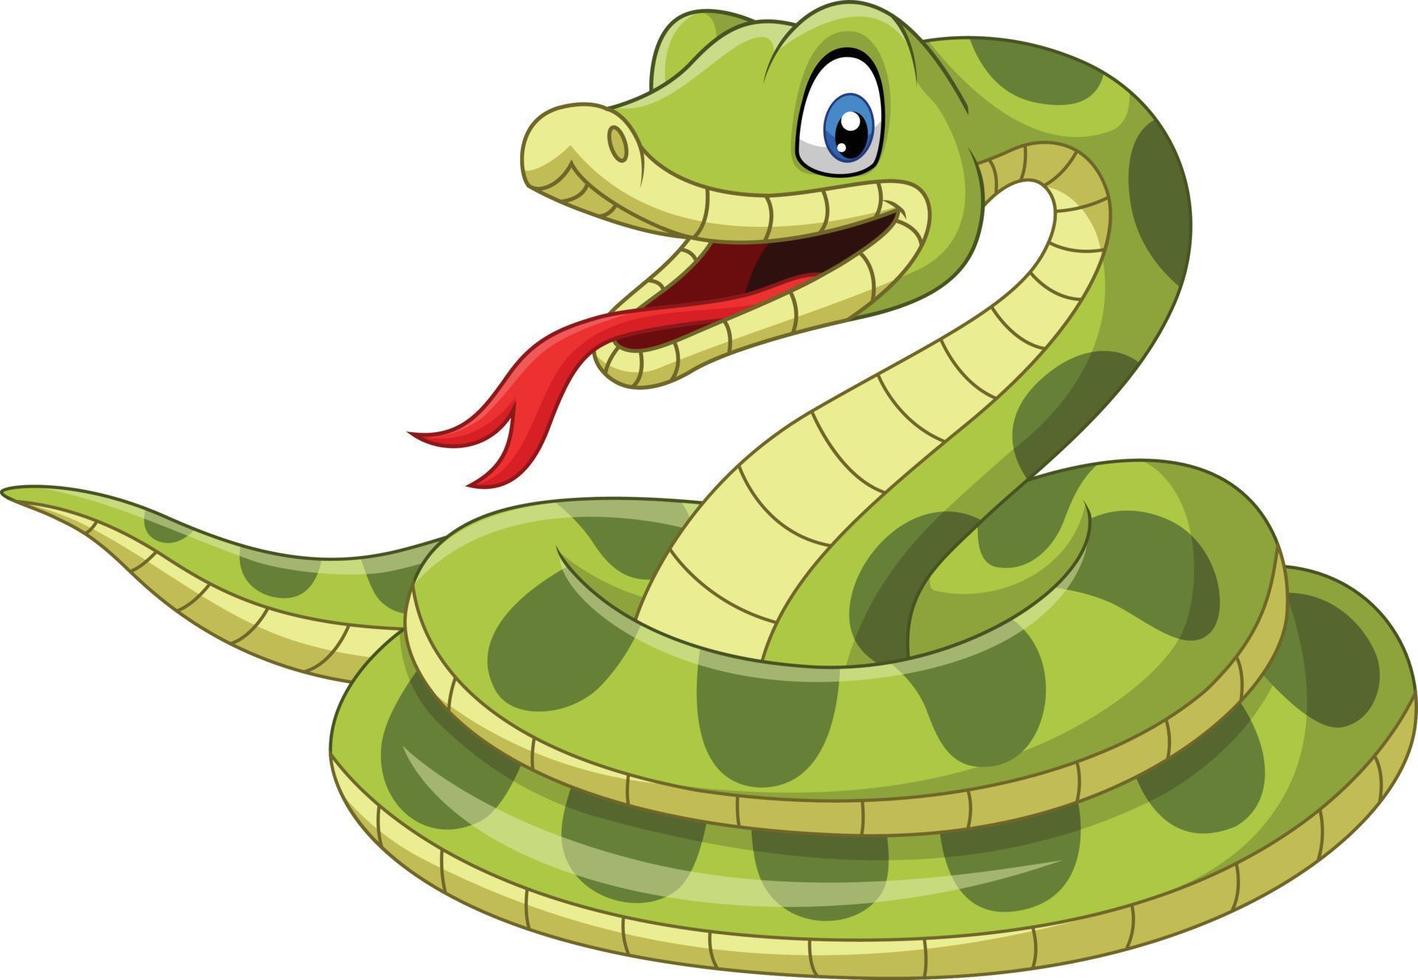 serpiente verde de dibujos animados sobre fondo blanco vector